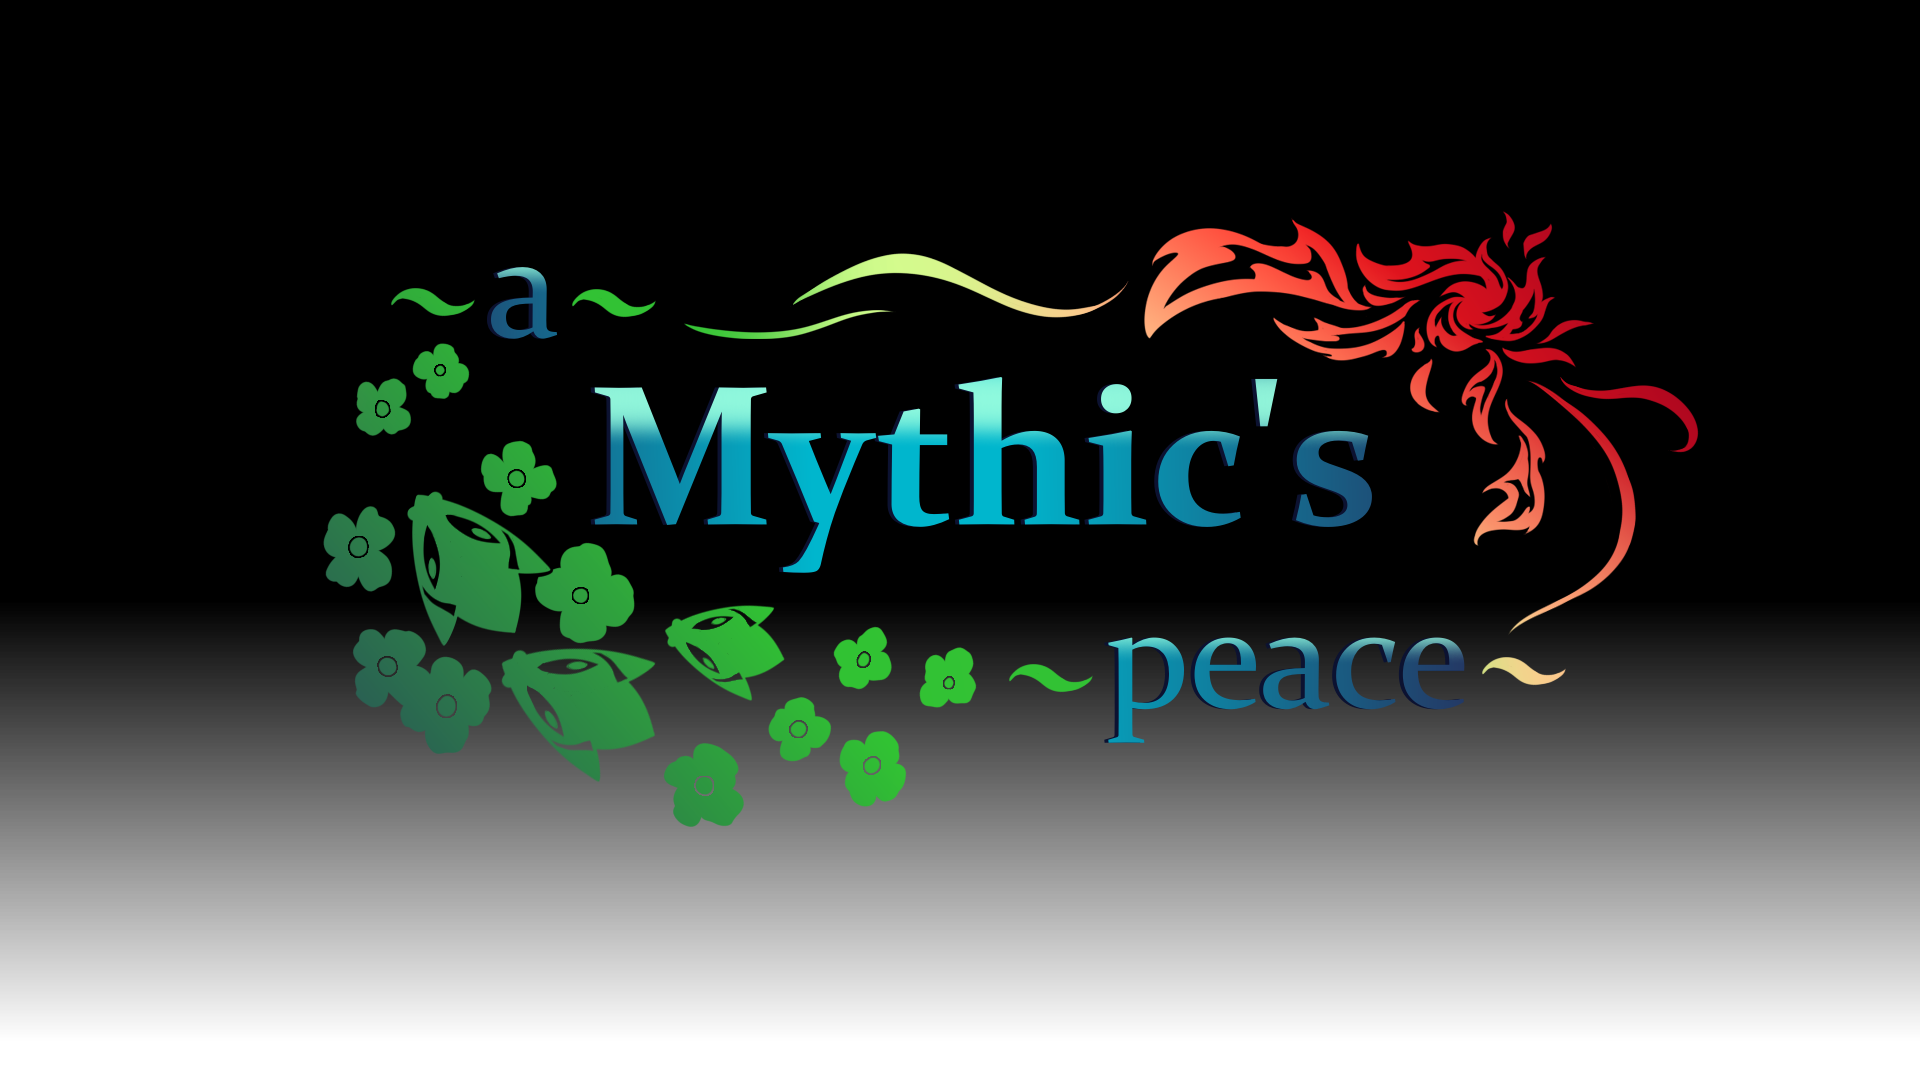 A Mythic's Peace